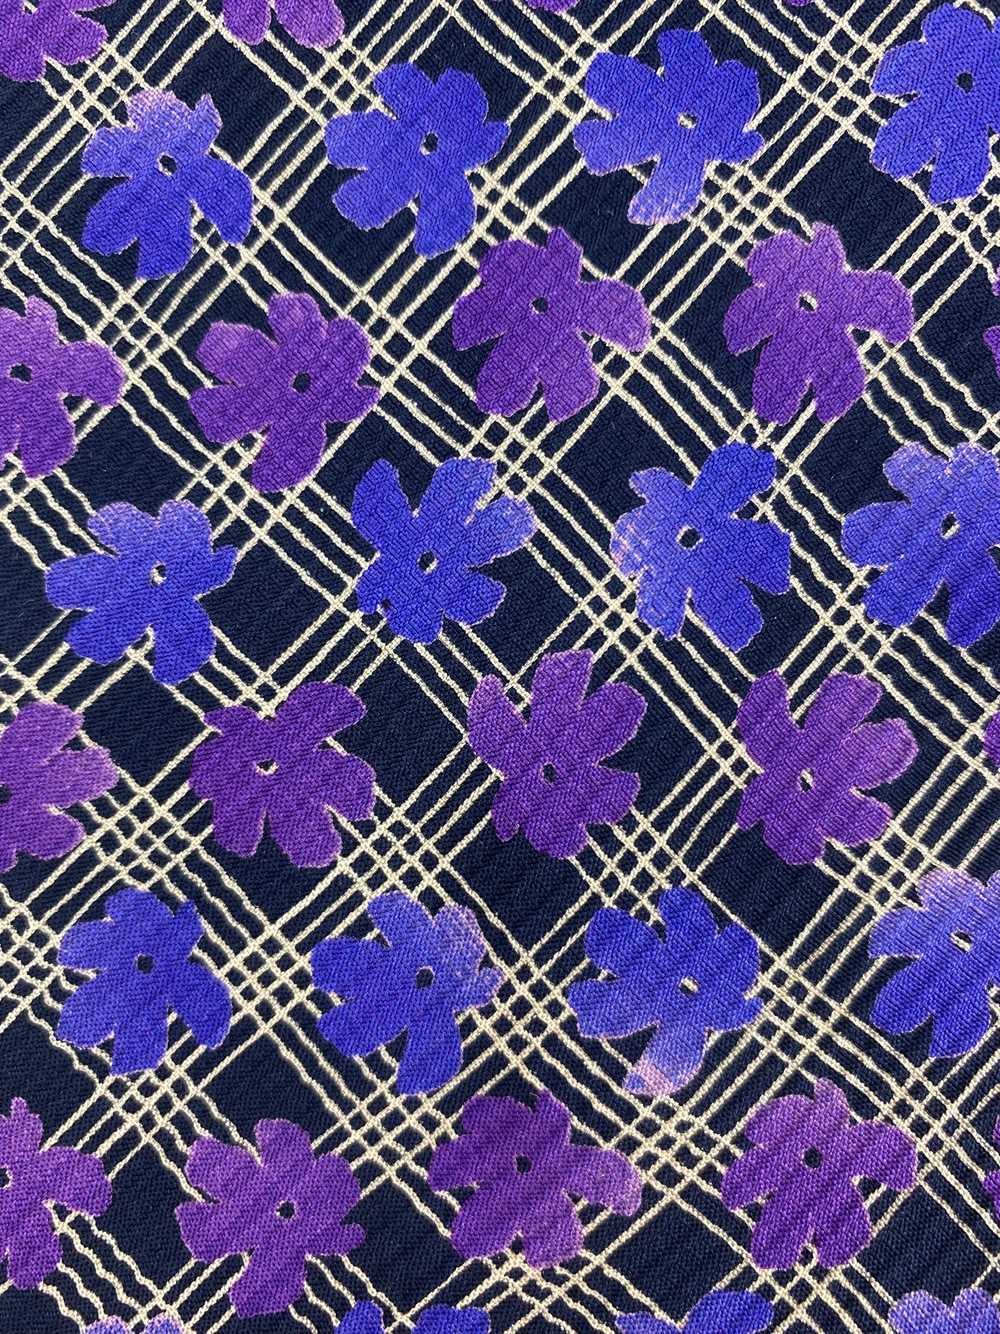 90s Deadstock Silk Necktie, Men's Vintage Purple … - image 2